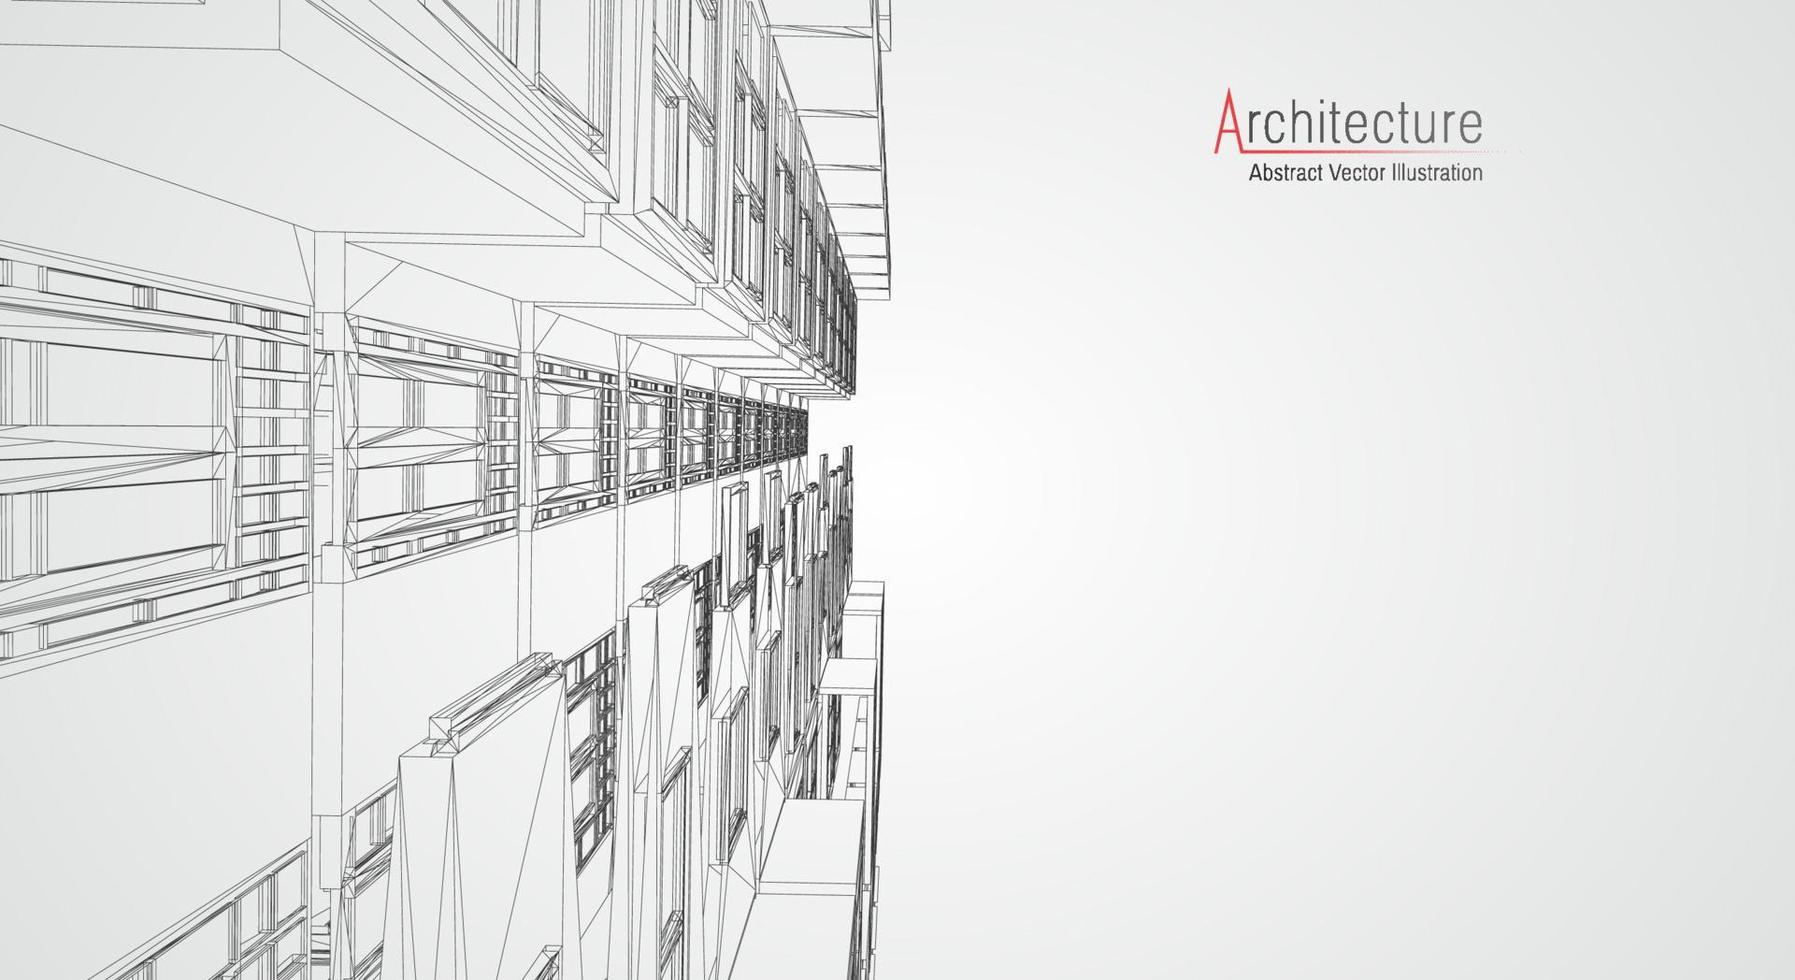 Drahtmodell der modernen Architektur. konzept des städtischen drahtmodells. Wireframe-Gebäude Illustration der Architektur-CAD-Zeichnung. vektor